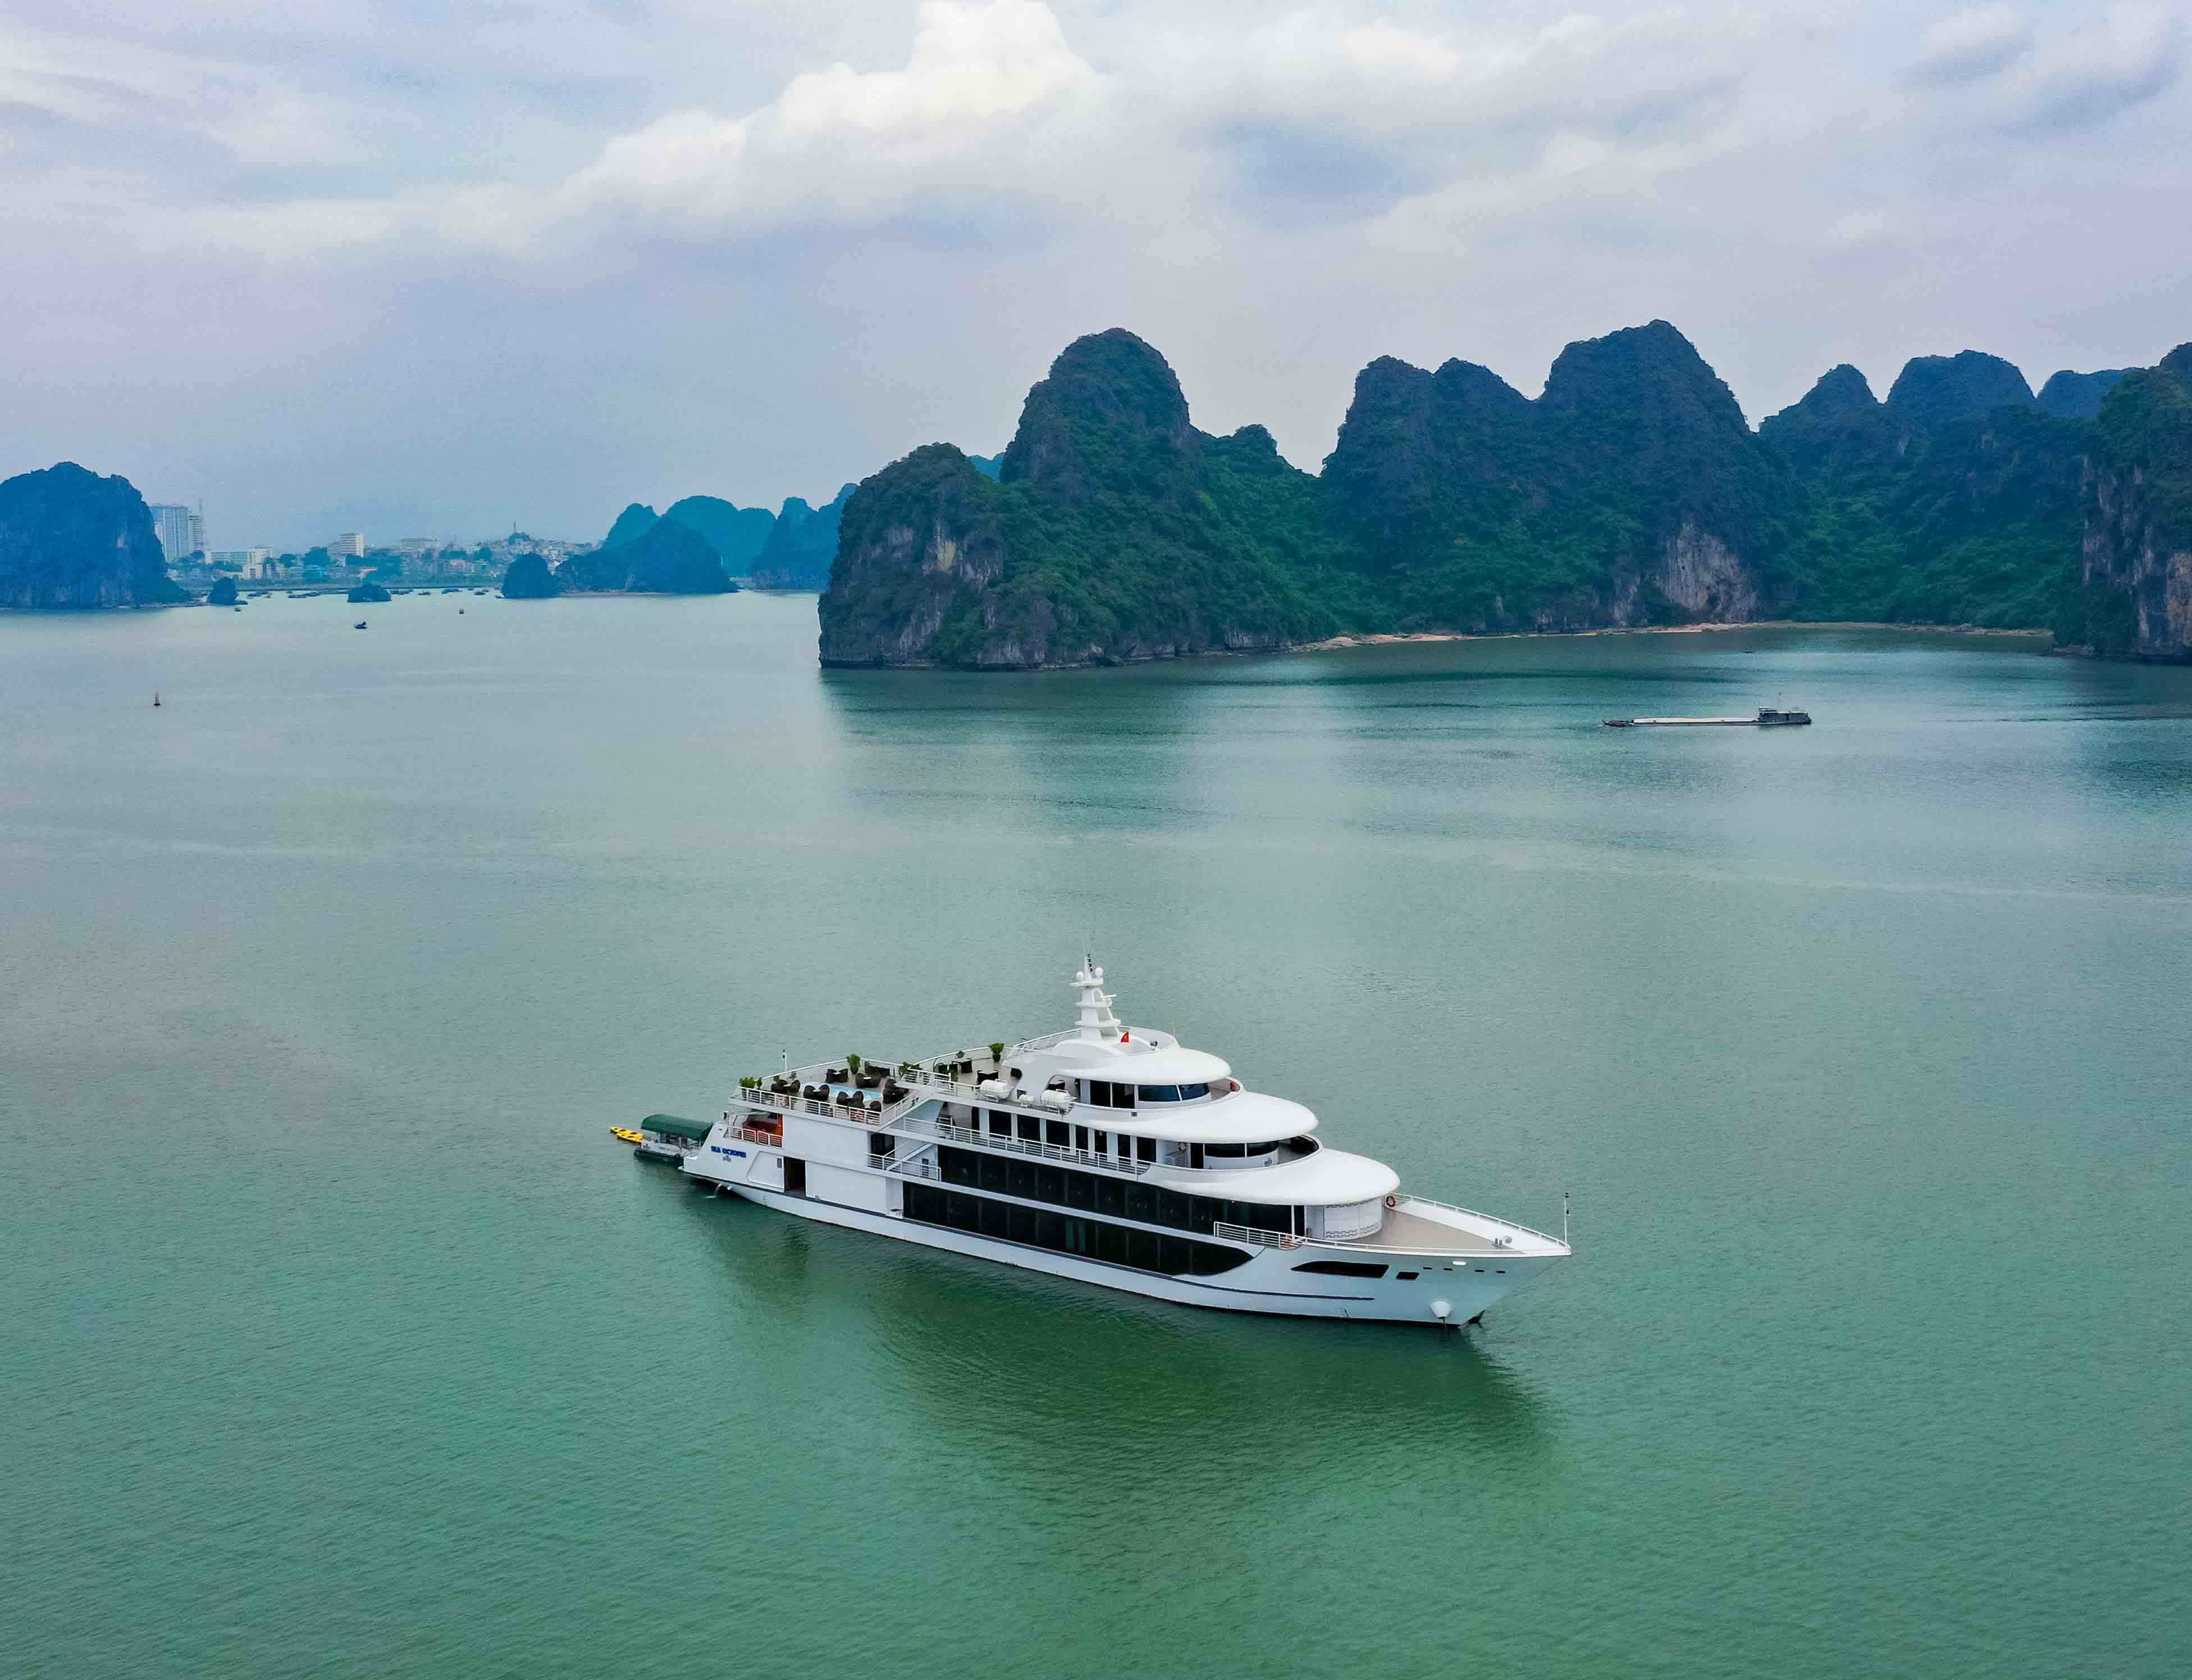 Long Khanh Island Vietnam cruise port schedule